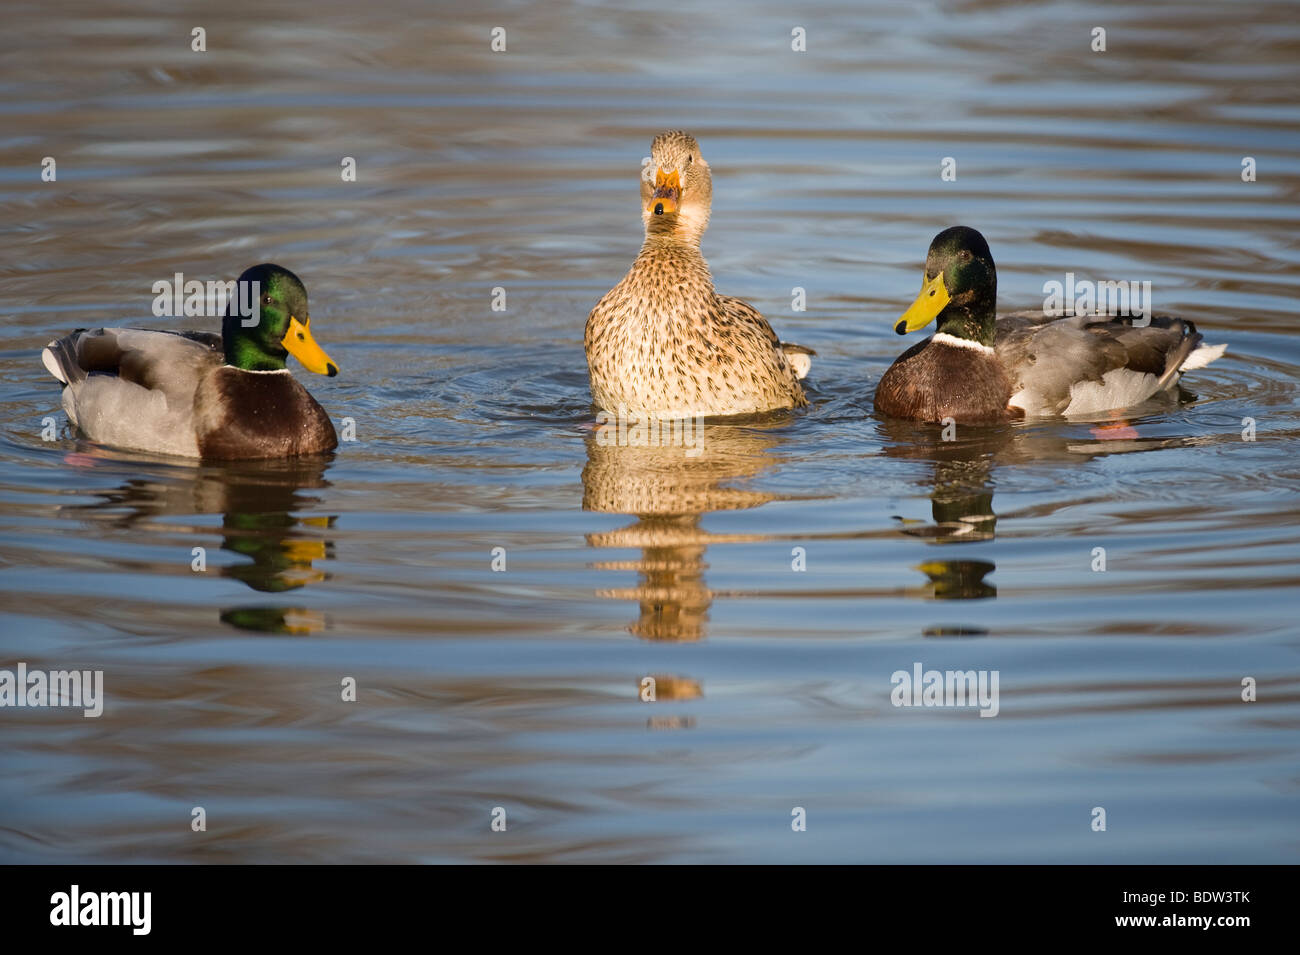 Courtship among ducks Stock Photo